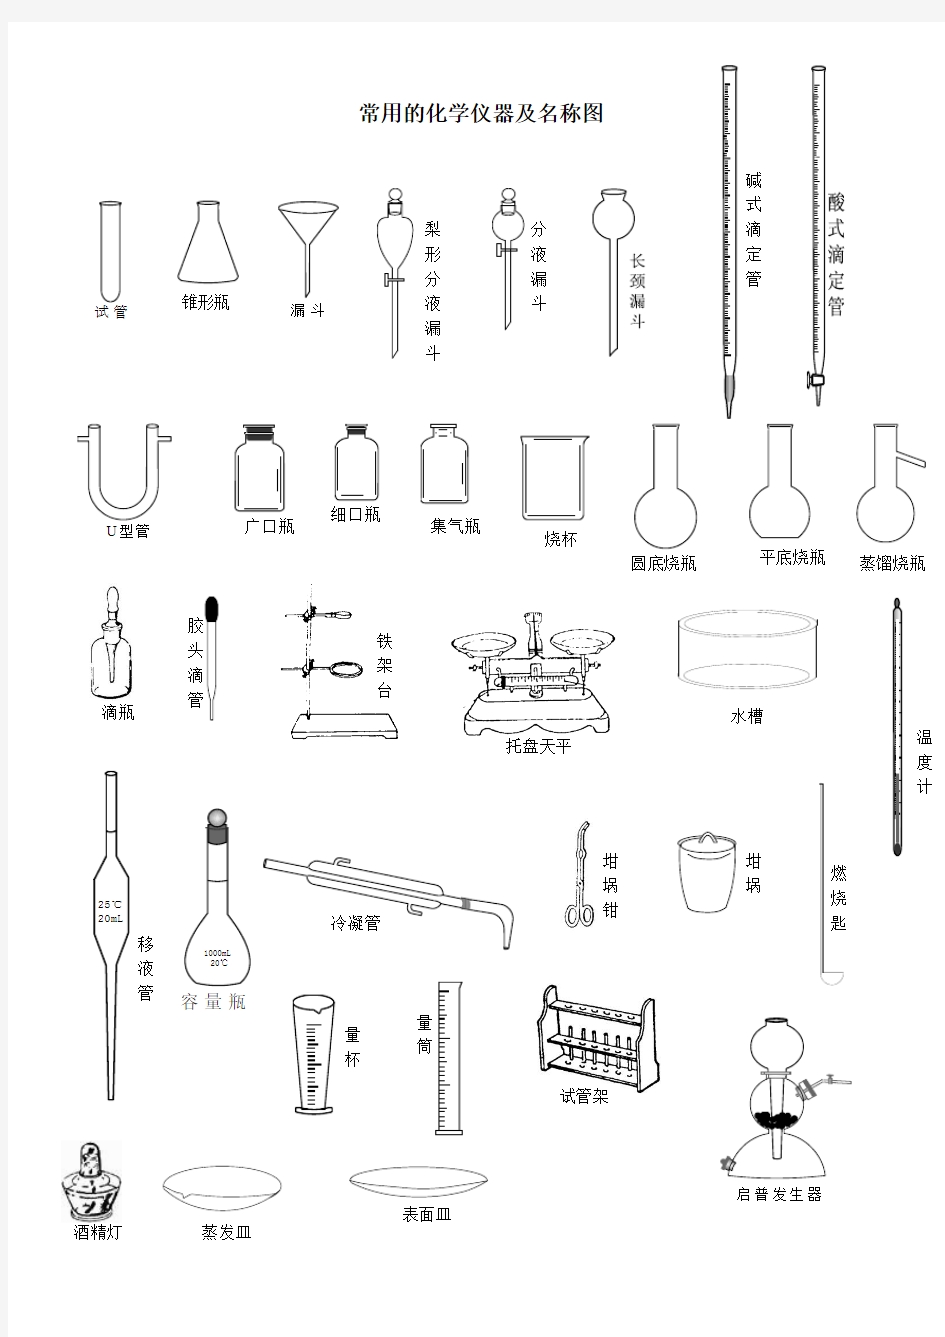 常用的化学仪器及名称图(整理)